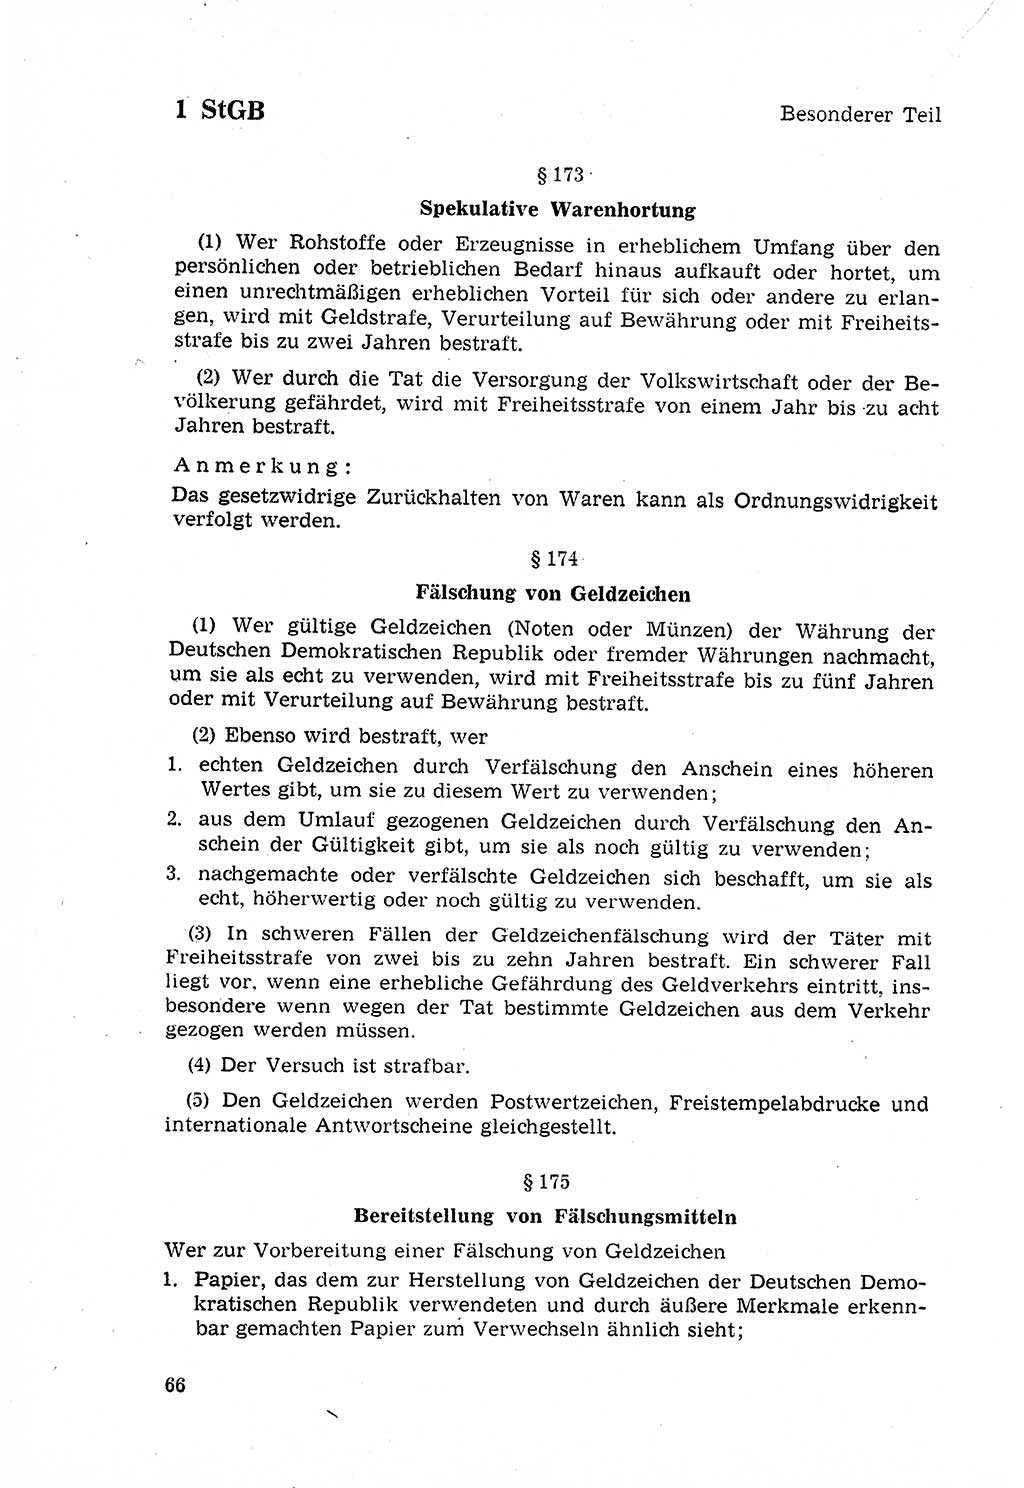 Strafgesetzbuch (StGB) der Deutschen Demokratischen Republik (DDR) 1968, Seite 66 (StGB DDR 1968, S. 66)